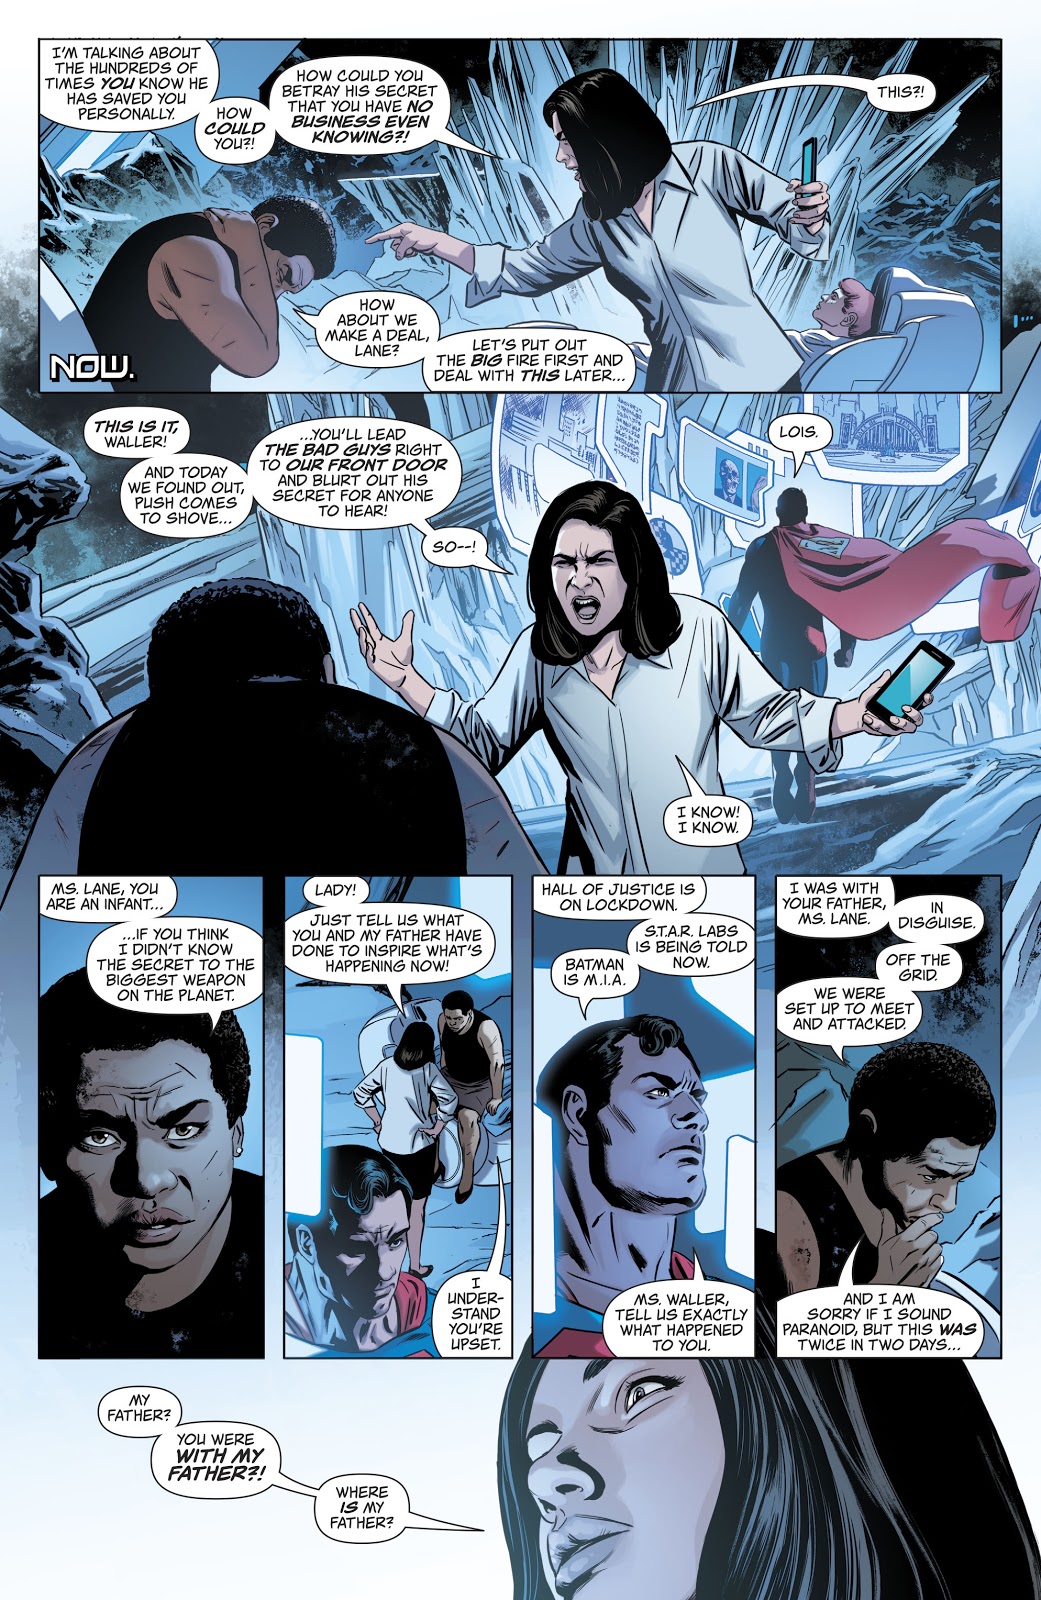 Superman Action Comics V2 Leviathan Rising review